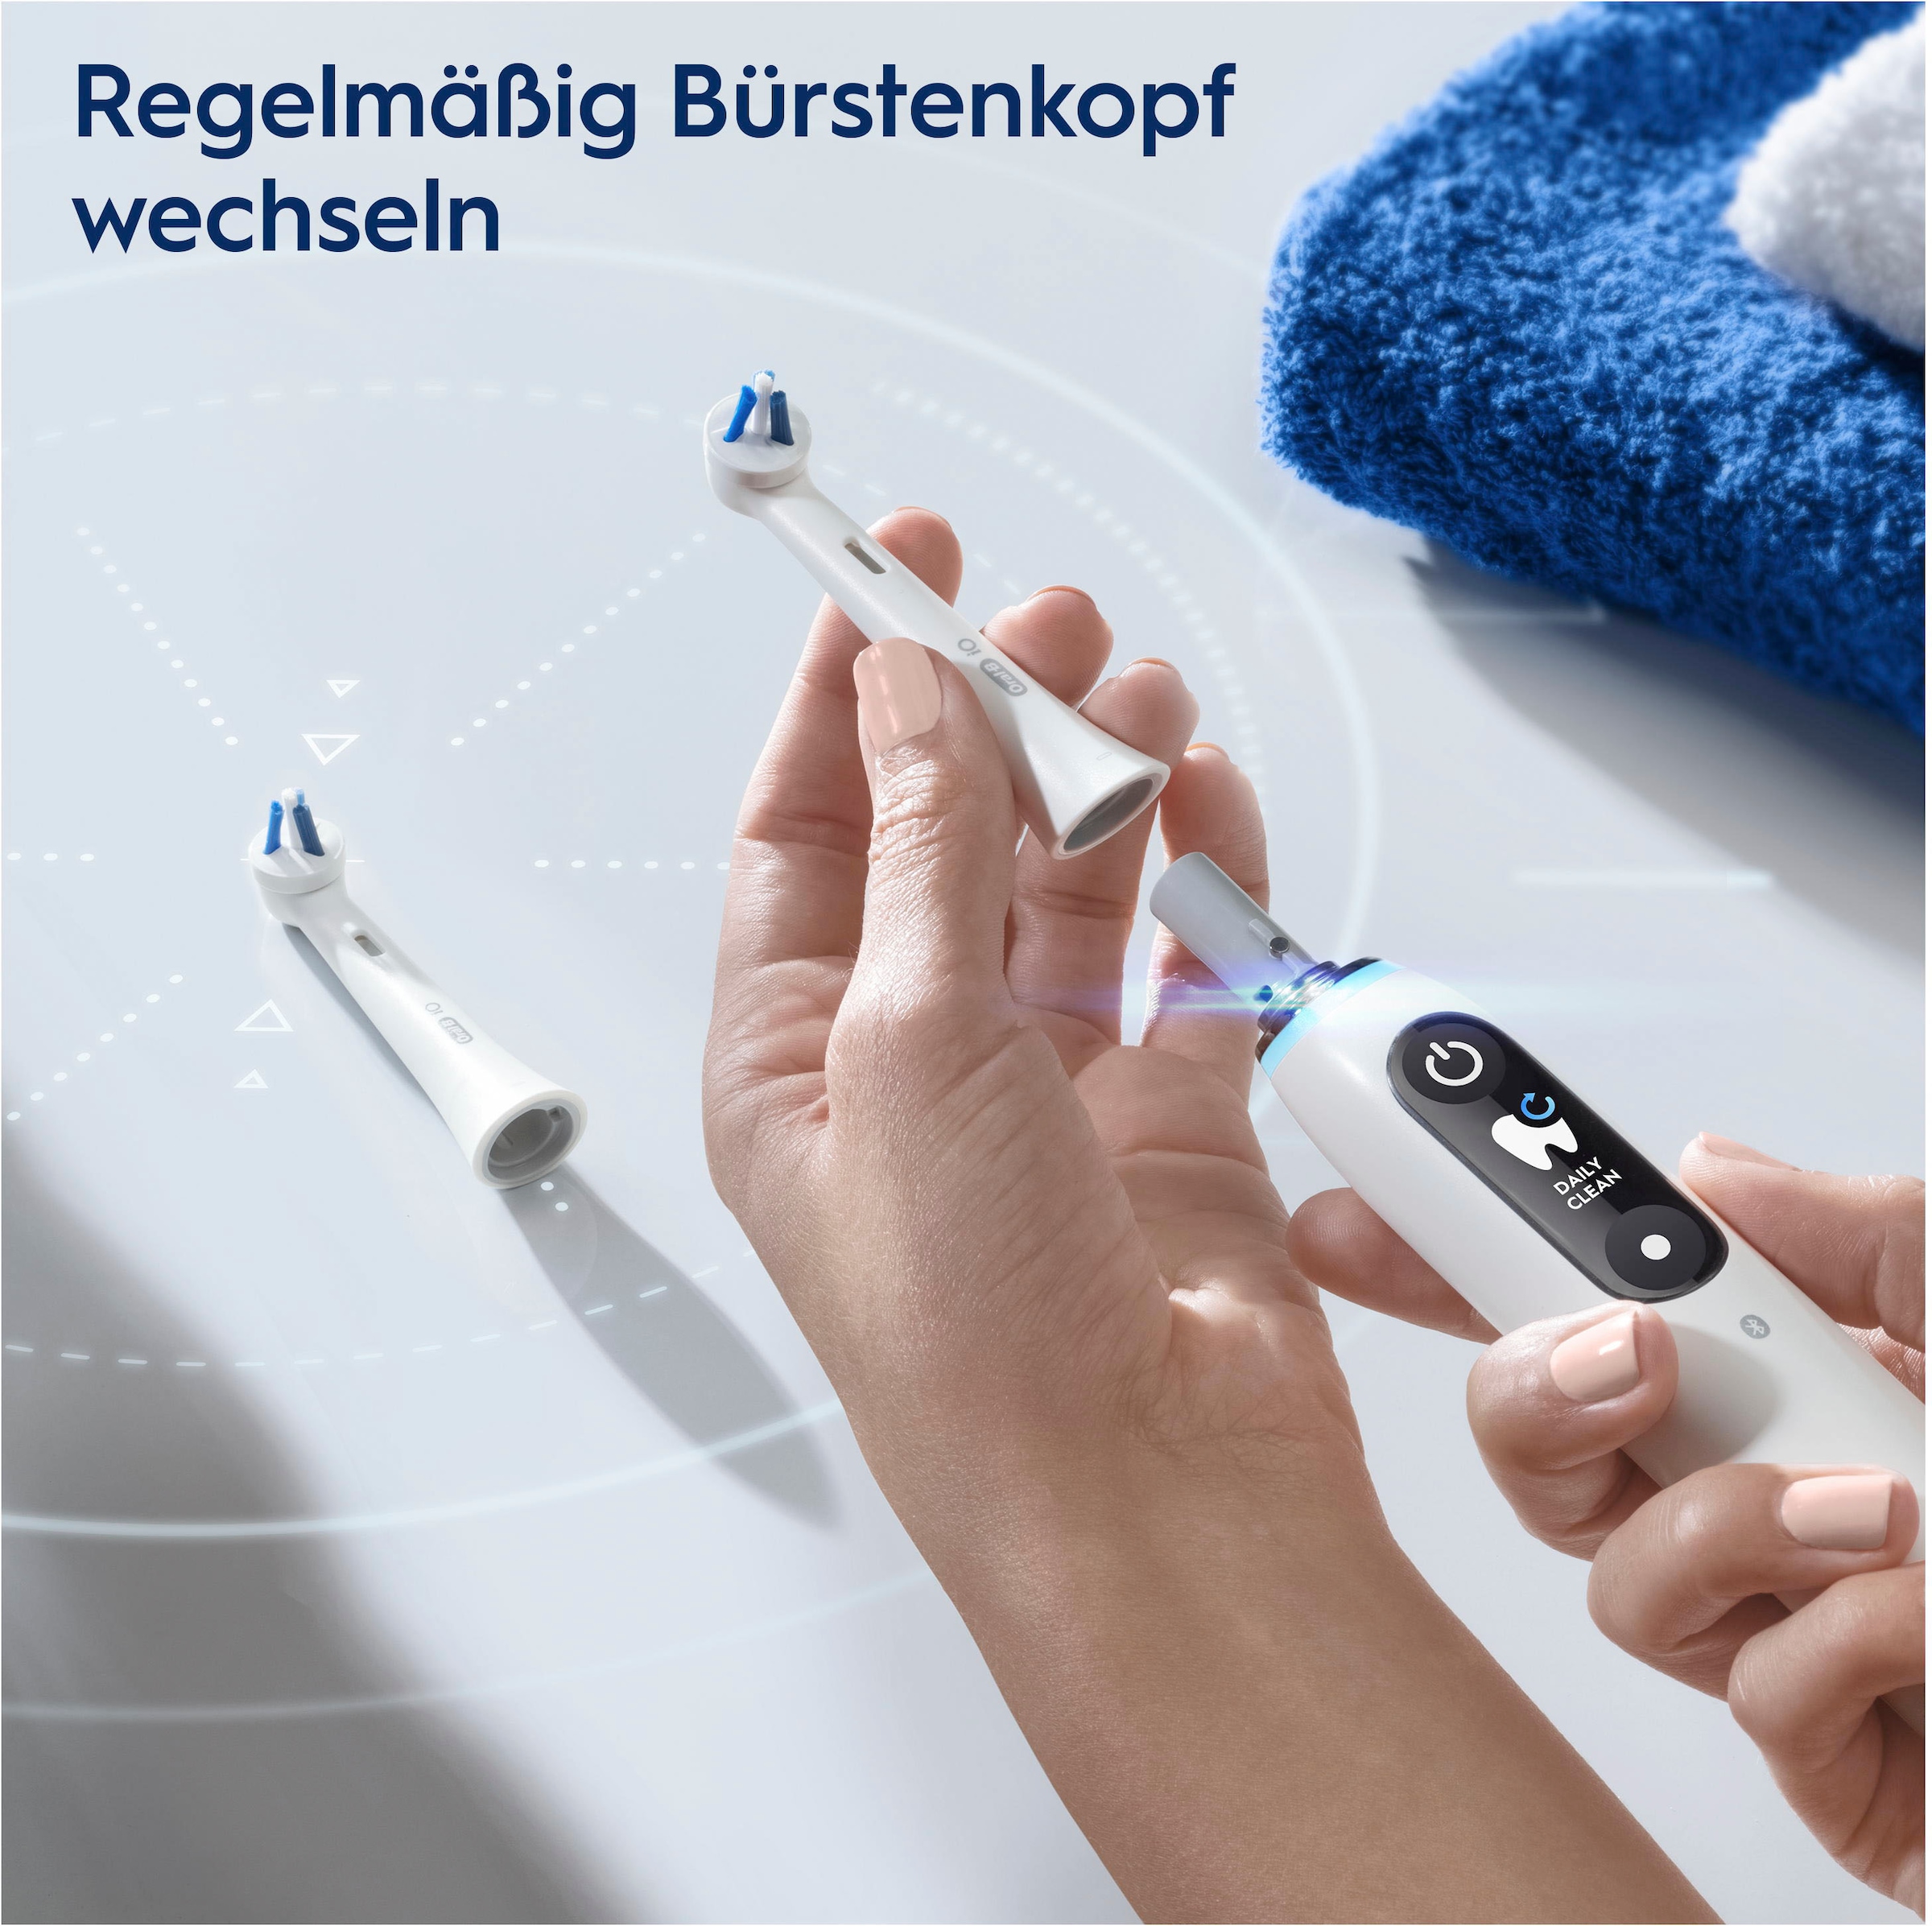 Oral-B Aufsteckbürste »iO«, (Spezialisierte Reinigung für elektrische Zahnbürste, 2 Stück)